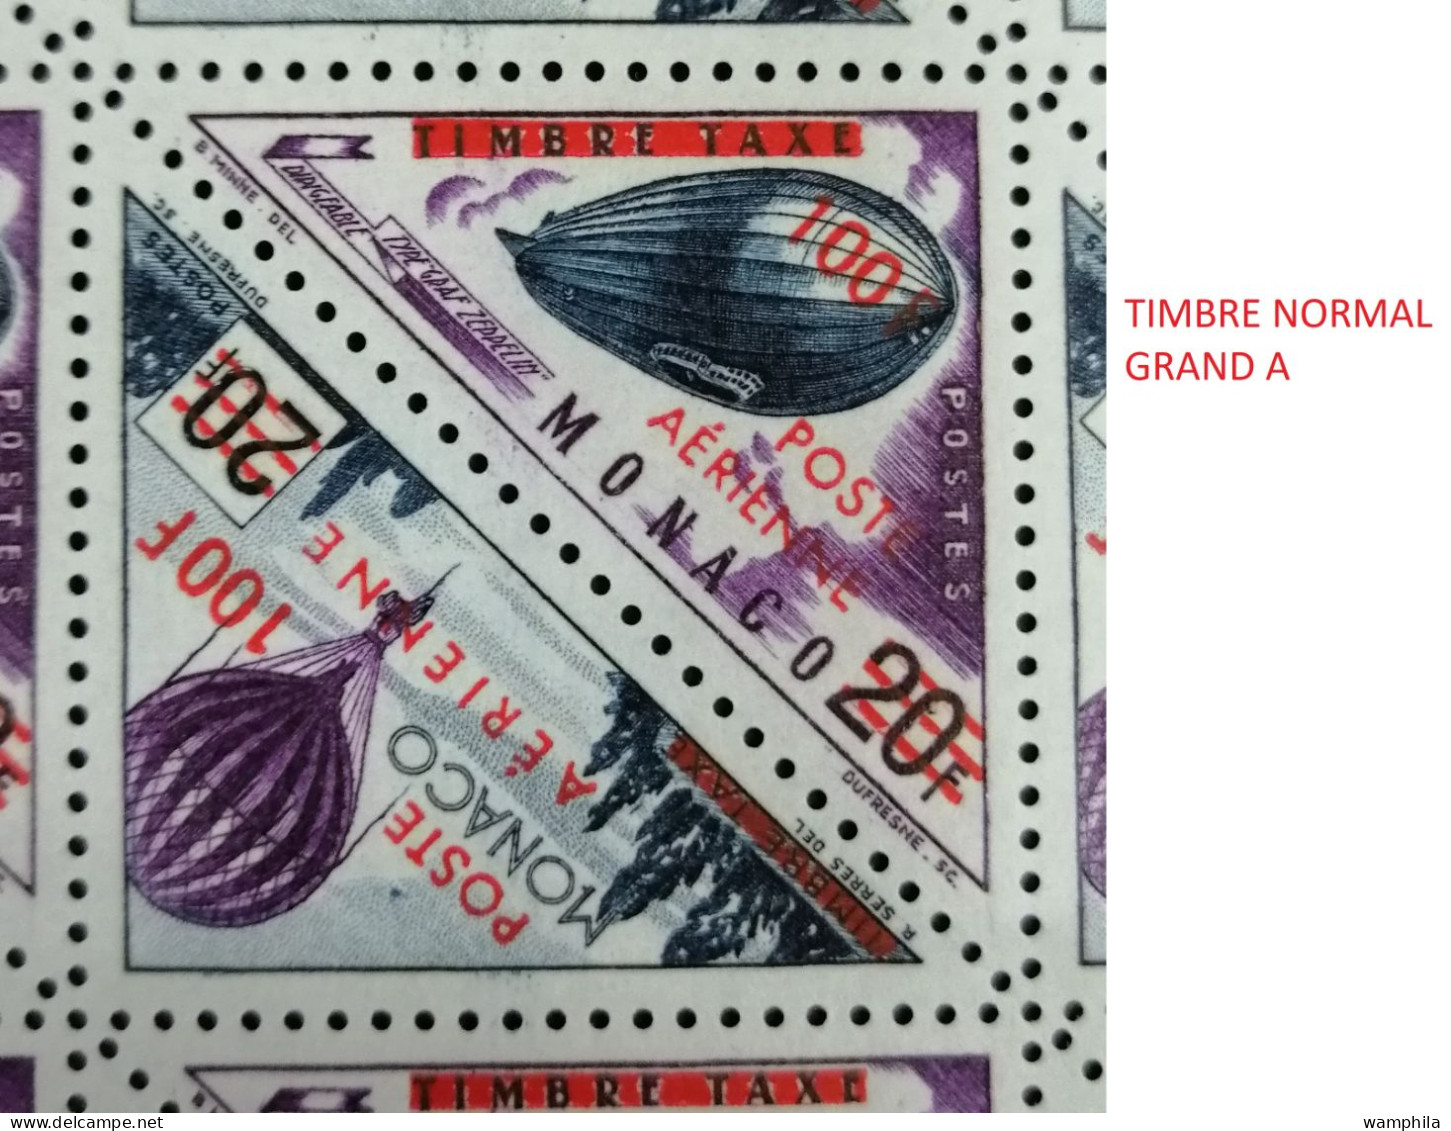 Monaco poste aérienne N°61/62** en feuille avec variétés du petit A à AERIENNE. Cote 837€.